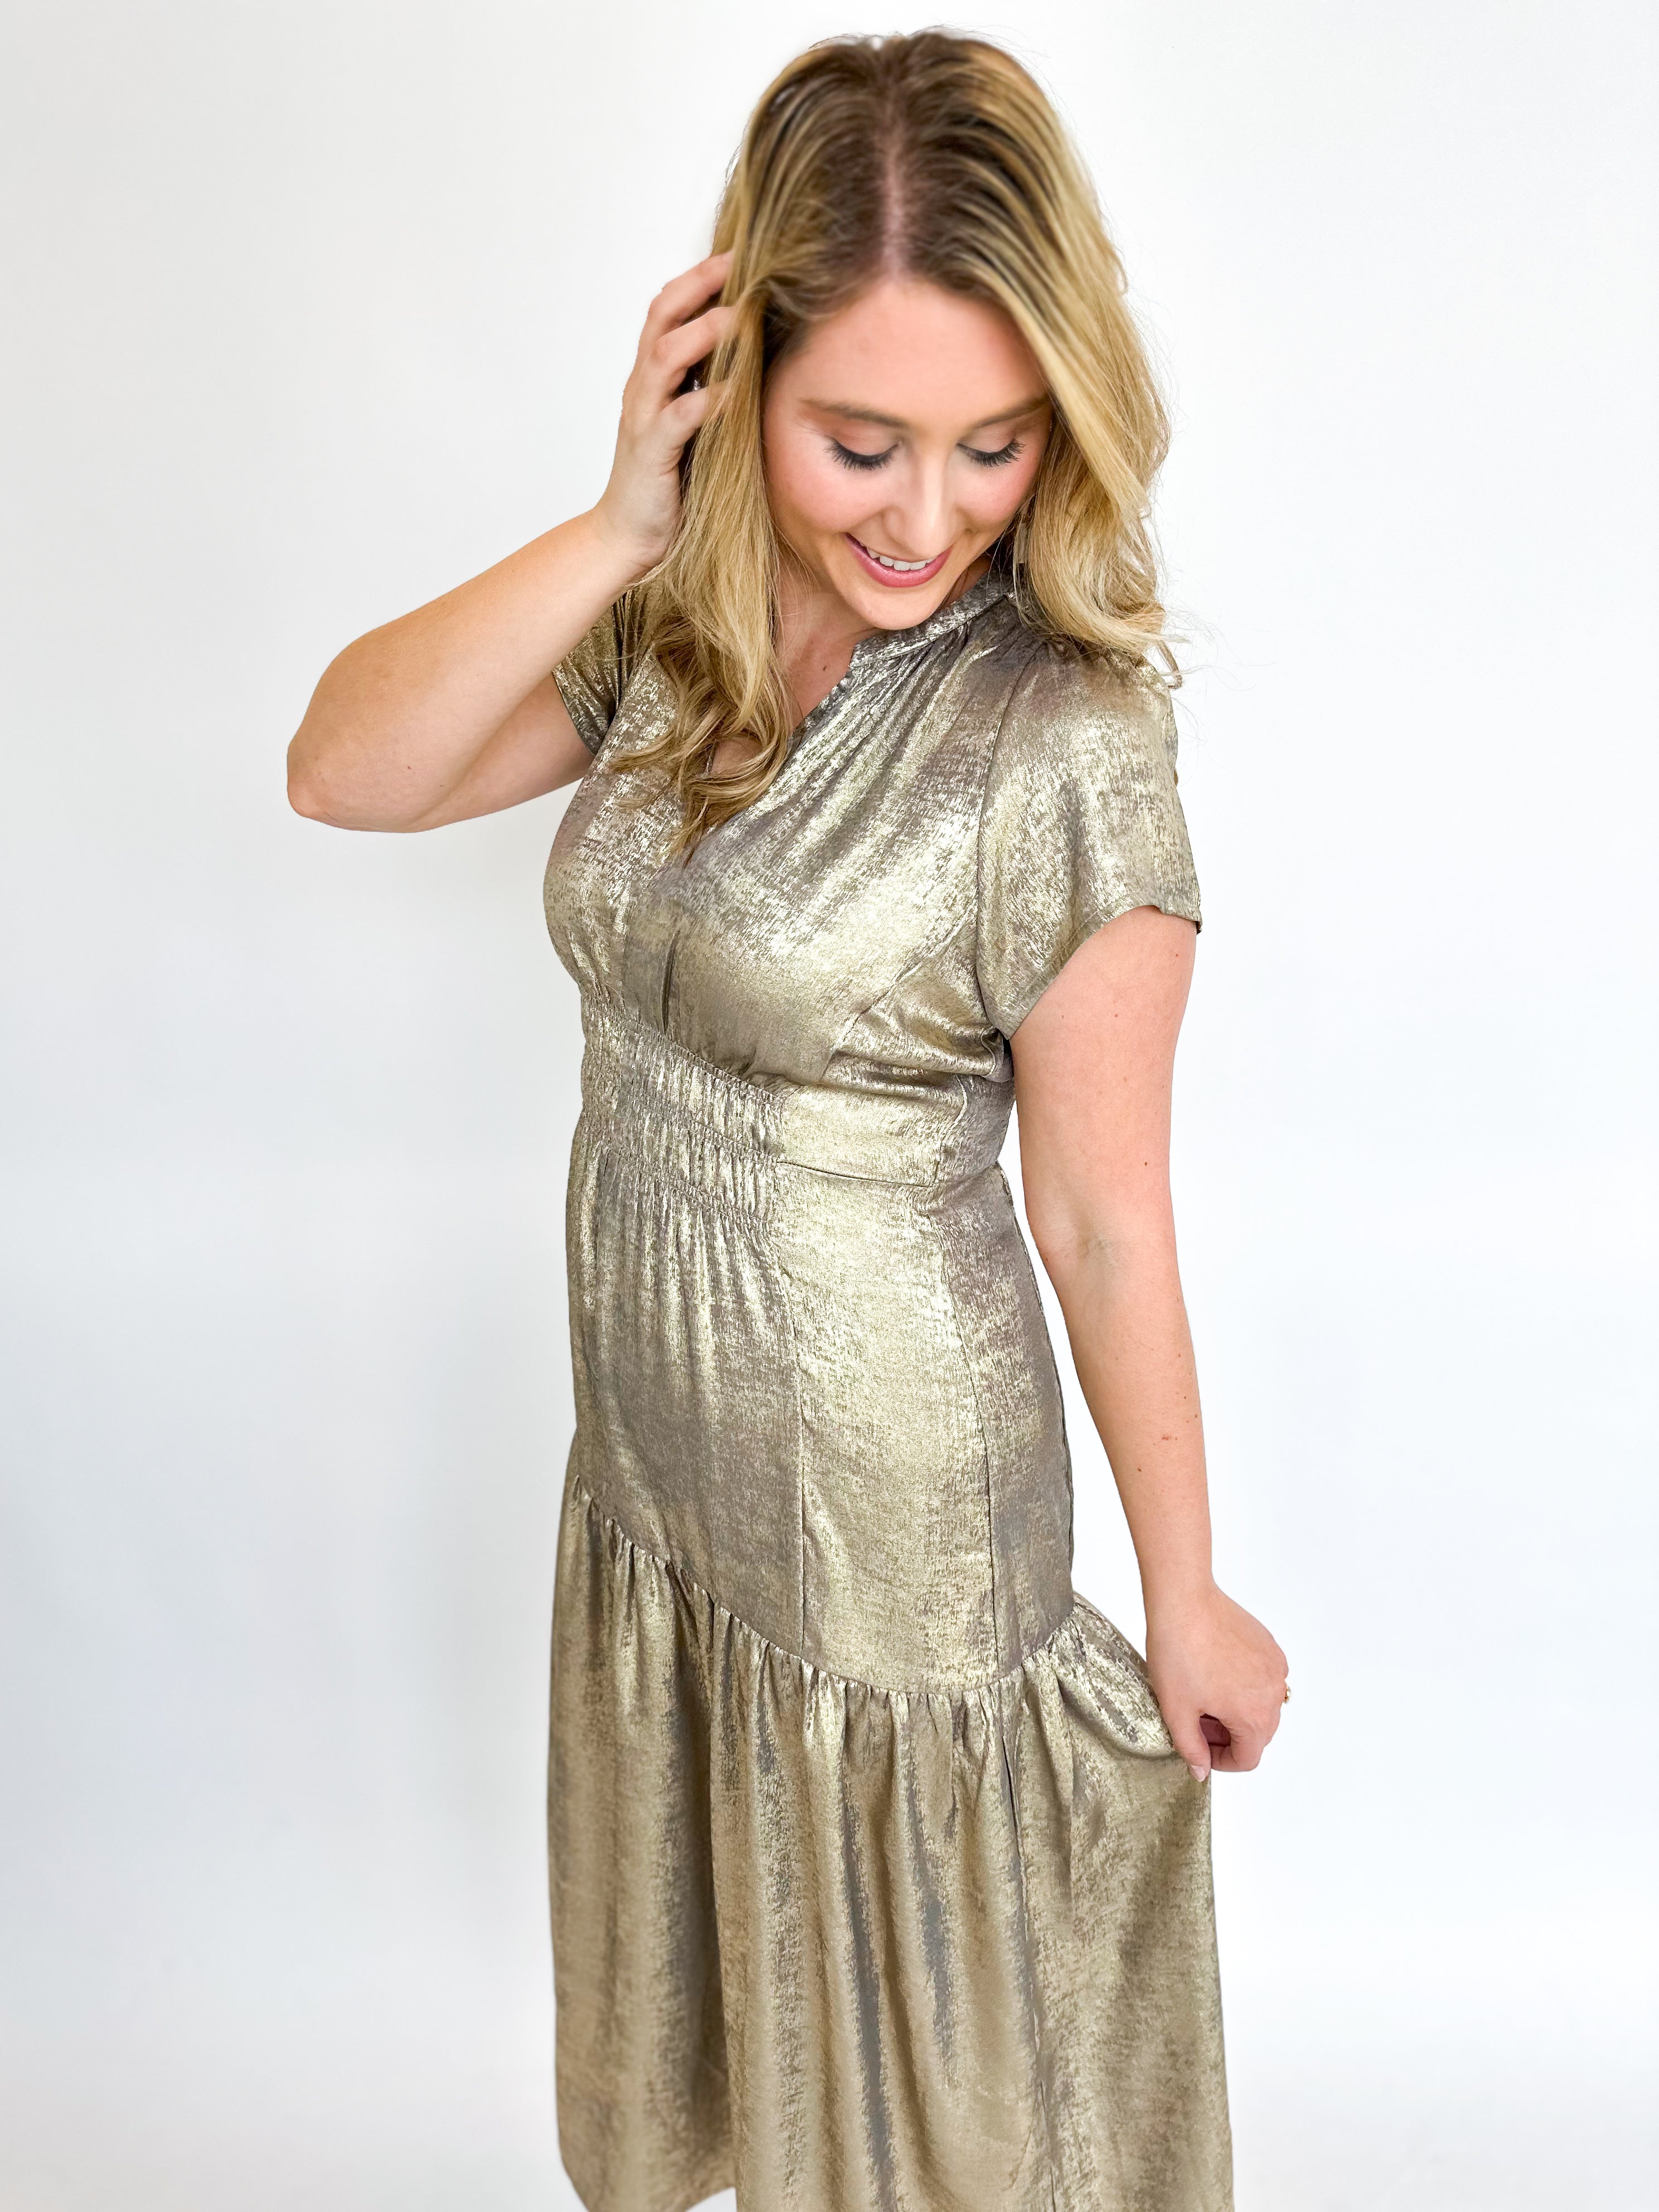 Silver & Gold Shine Midi Dress-500 Midi-GRADE & GATHER-July & June Women's Fashion Boutique Located in San Antonio, Texas